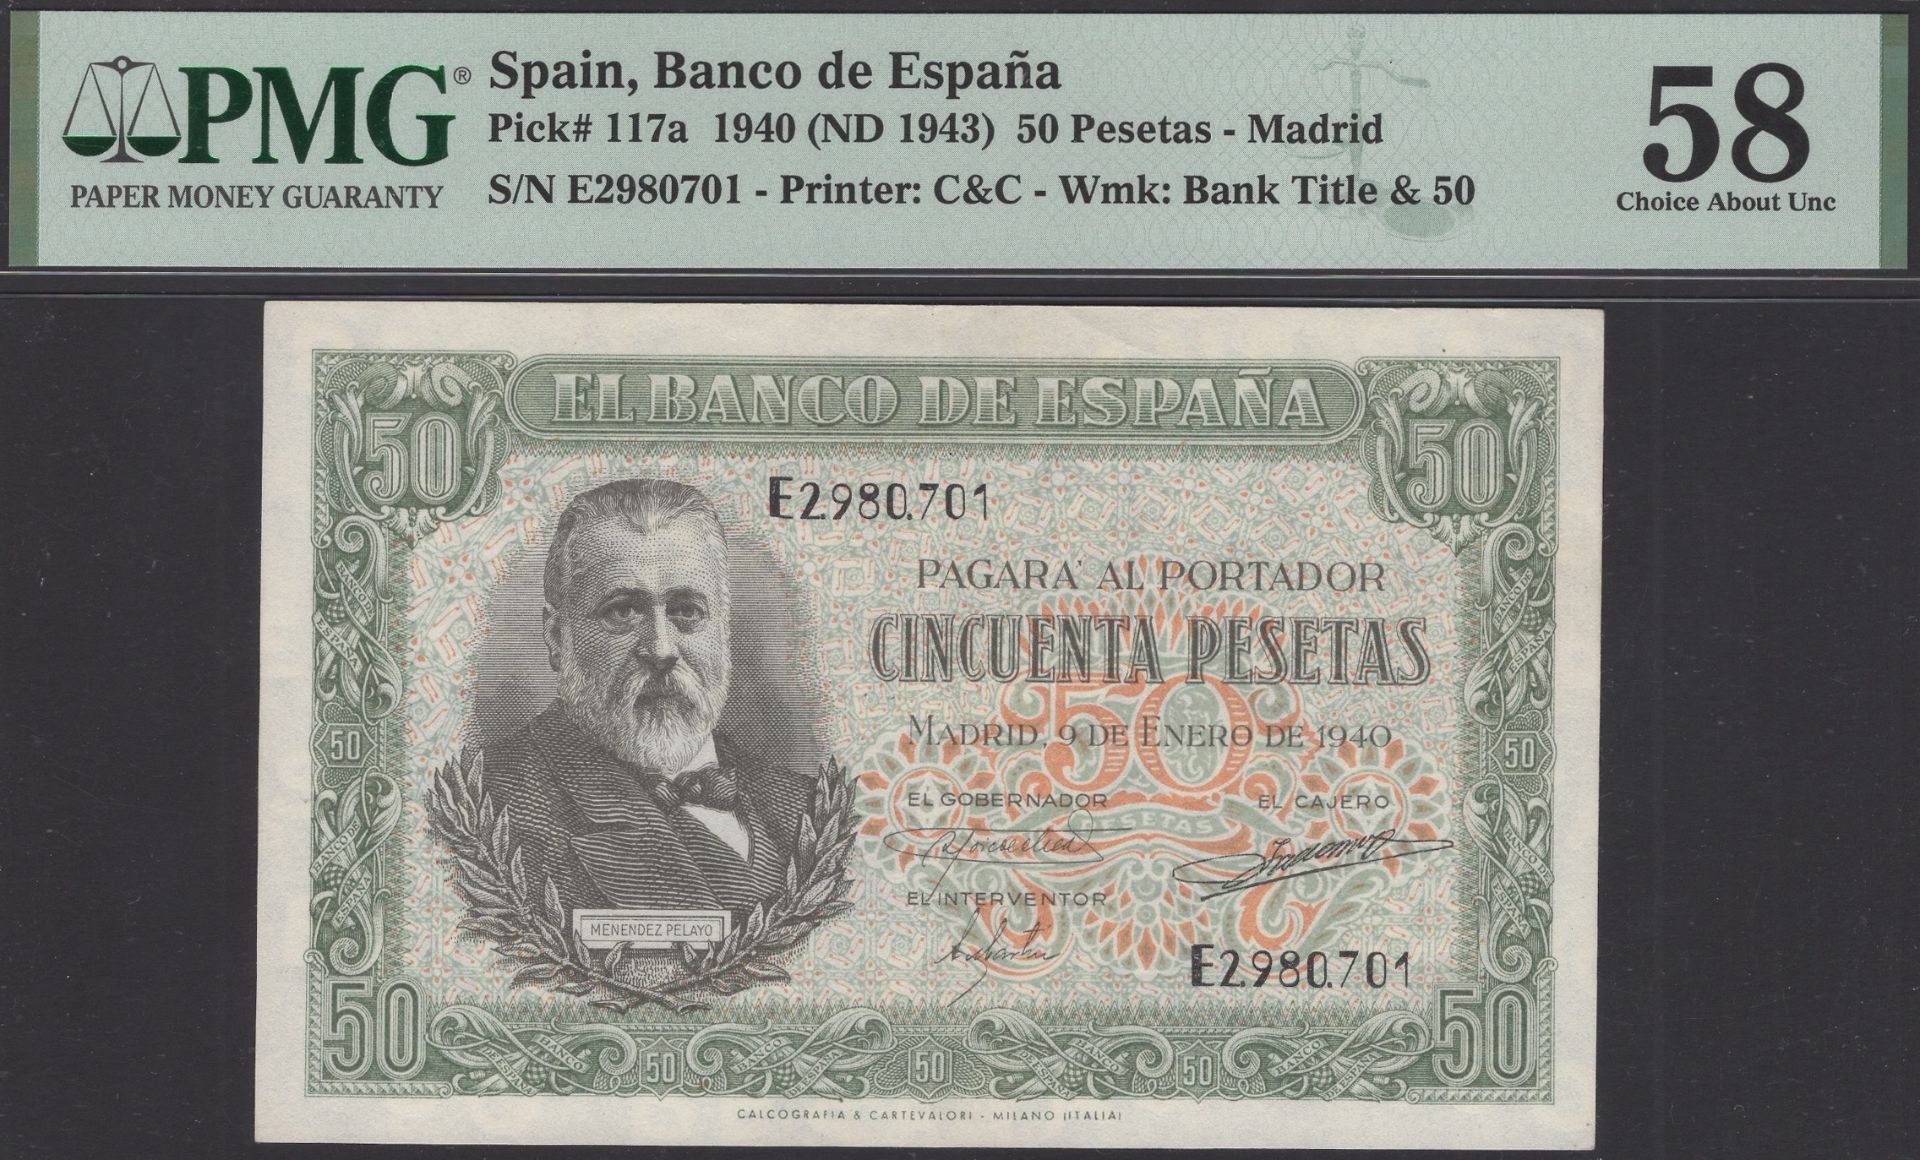 Banco de Espana, 50 Pesetas, 9 January 1940, serial number E 2980701, in PMG holder 58, choi...